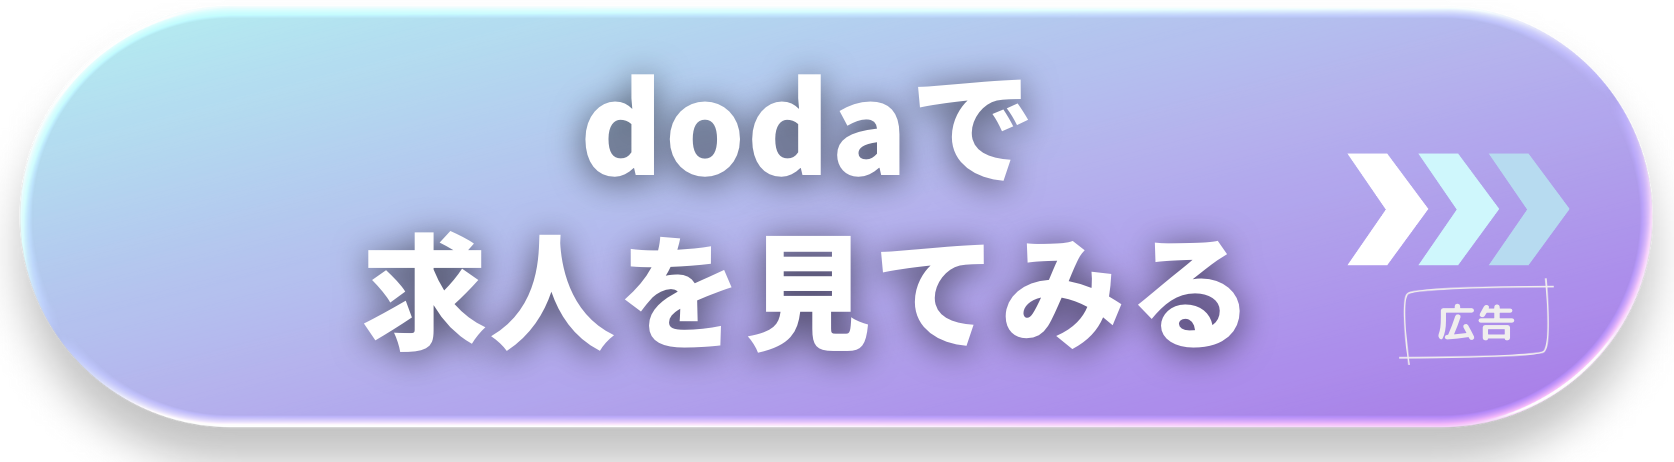 doda-転職相談